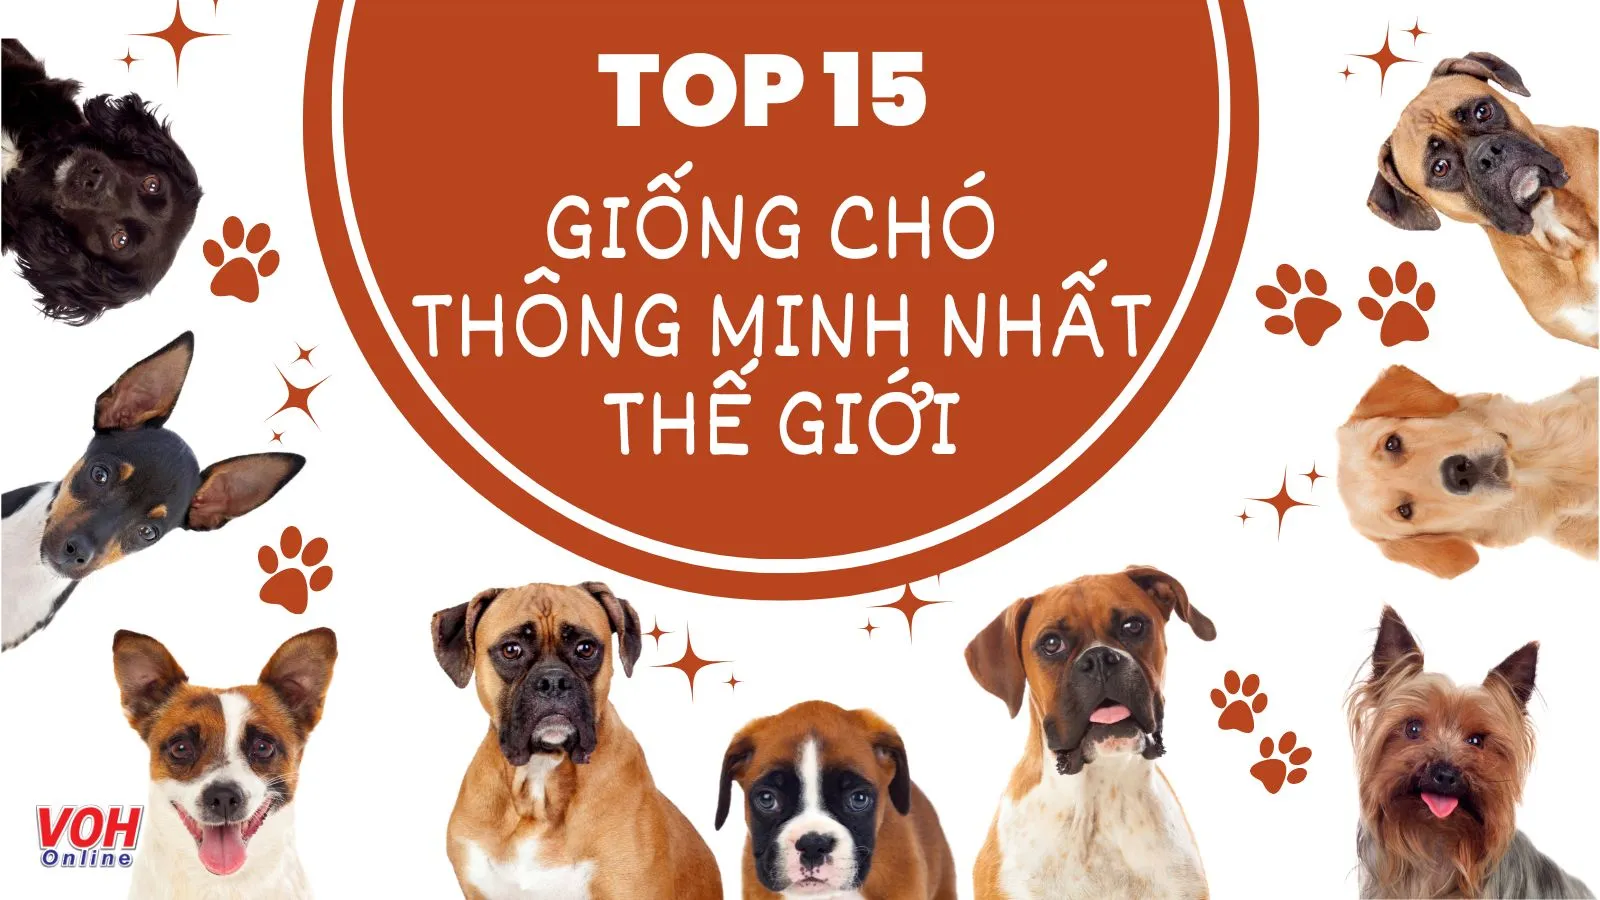 Top 15 giống chó thông minh nhất thế giới và dễ huấn luyện nhất